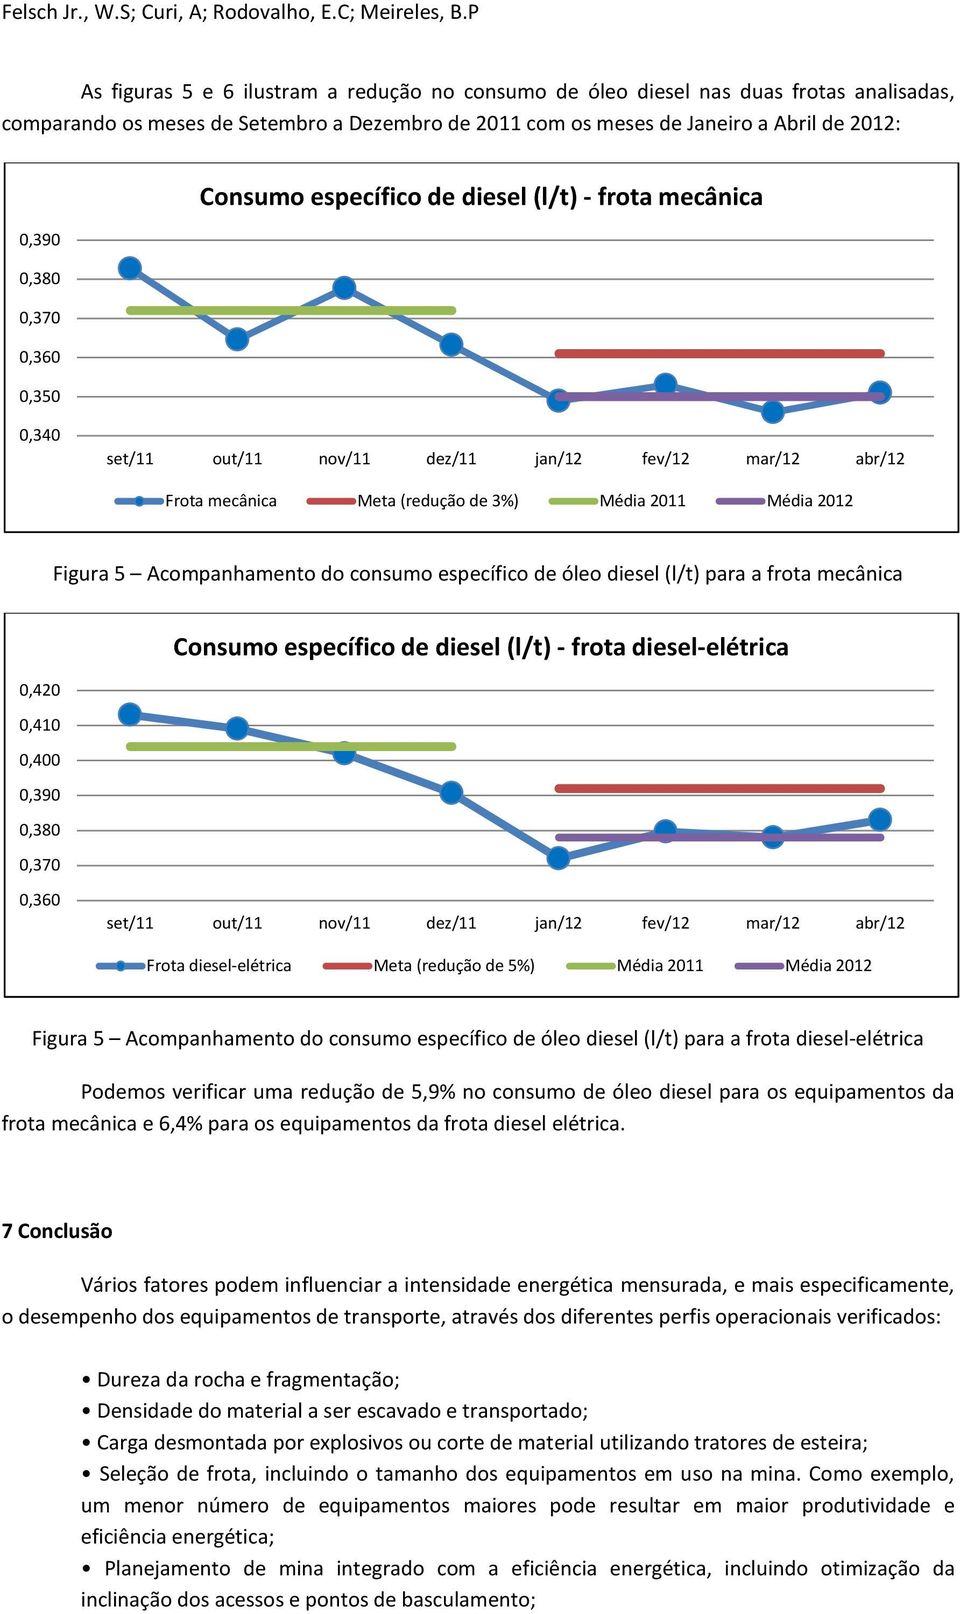 Acompanhamento do consumo específico de óleo diesel (l/t) para a frota mecânica 0,420 0,410 0,400 0,390 0,380 0,370 Consumo específico de diesel (l/t) - frota diesel-elétrica 0,360 set/11 out/11